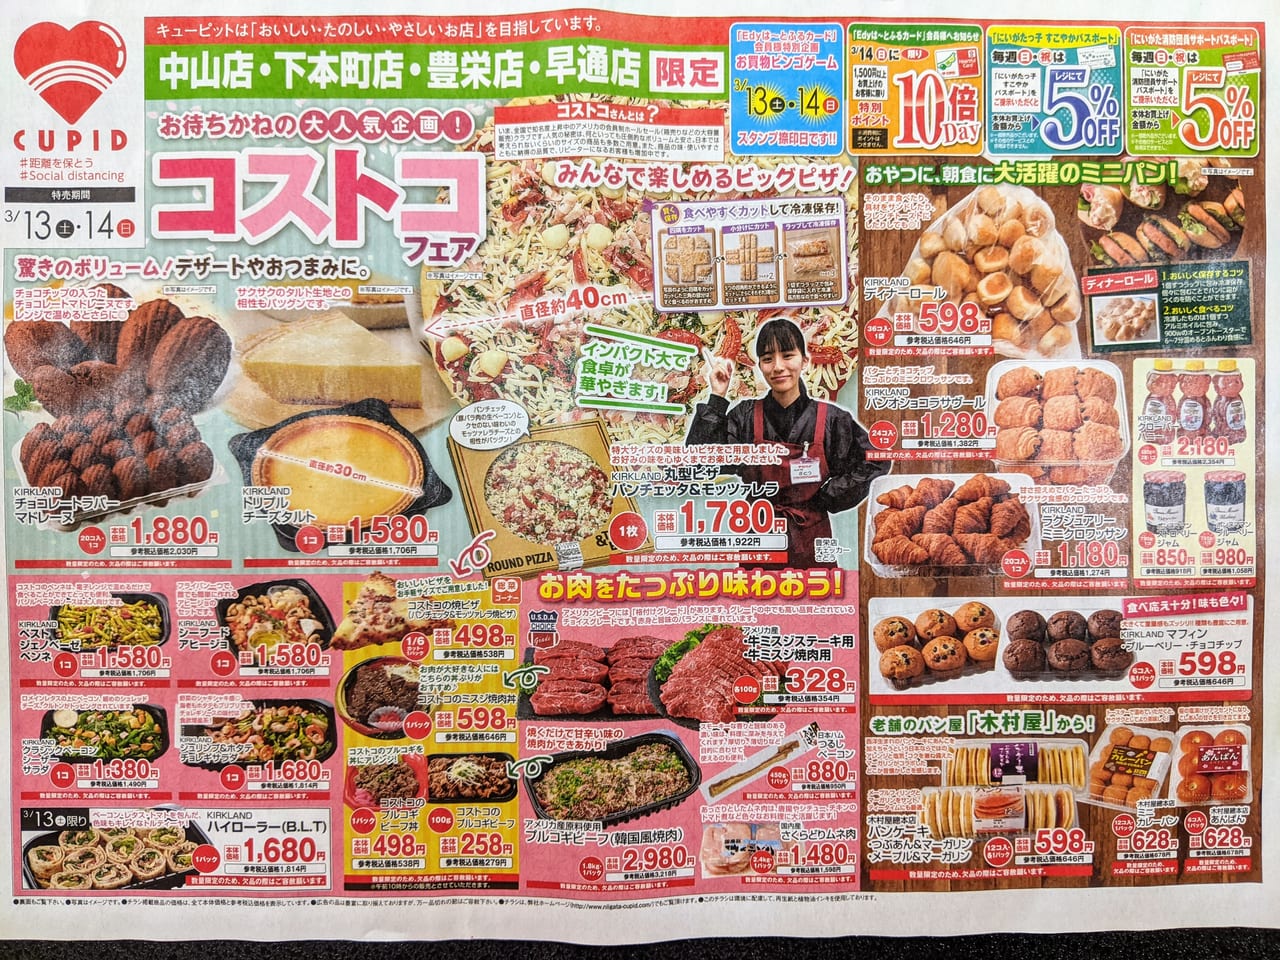 新潟市 大人気企画 コストコフェアがスーパー キューピット 一部店舗で3月13日 14日に開催されています 号外net 新潟市北区 東区